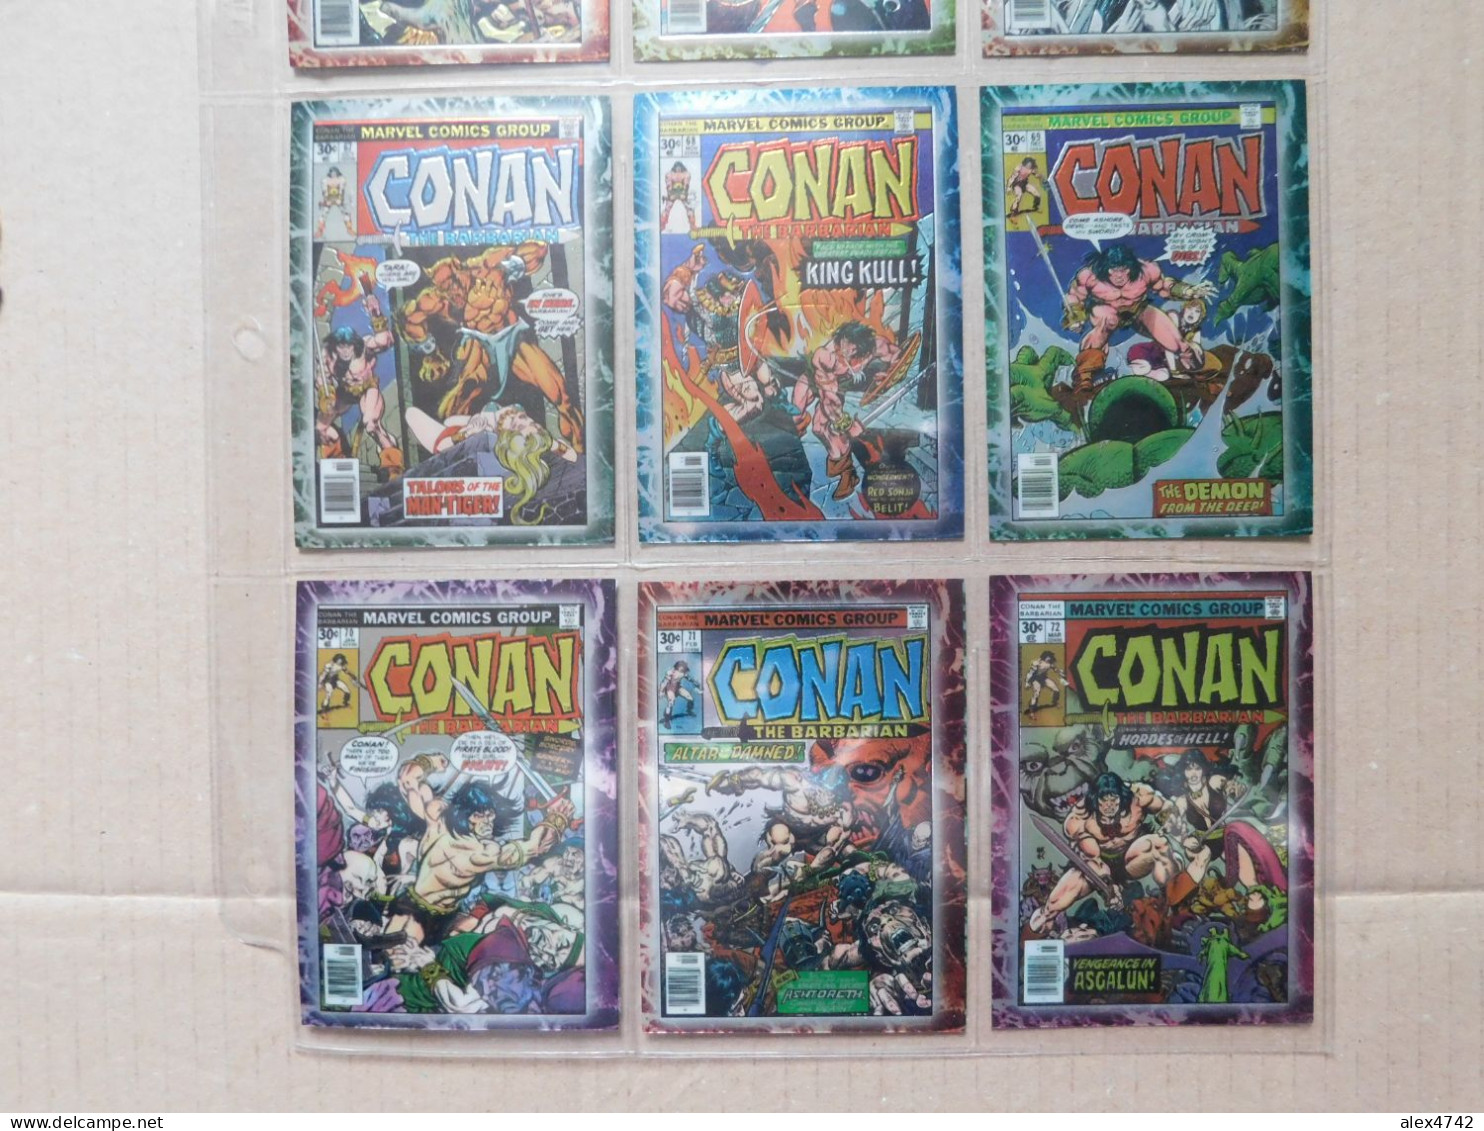 Marvel Comics Group, Conan the Barbarian, Collection complète de 90 cartes - 1996   (BOX 5)